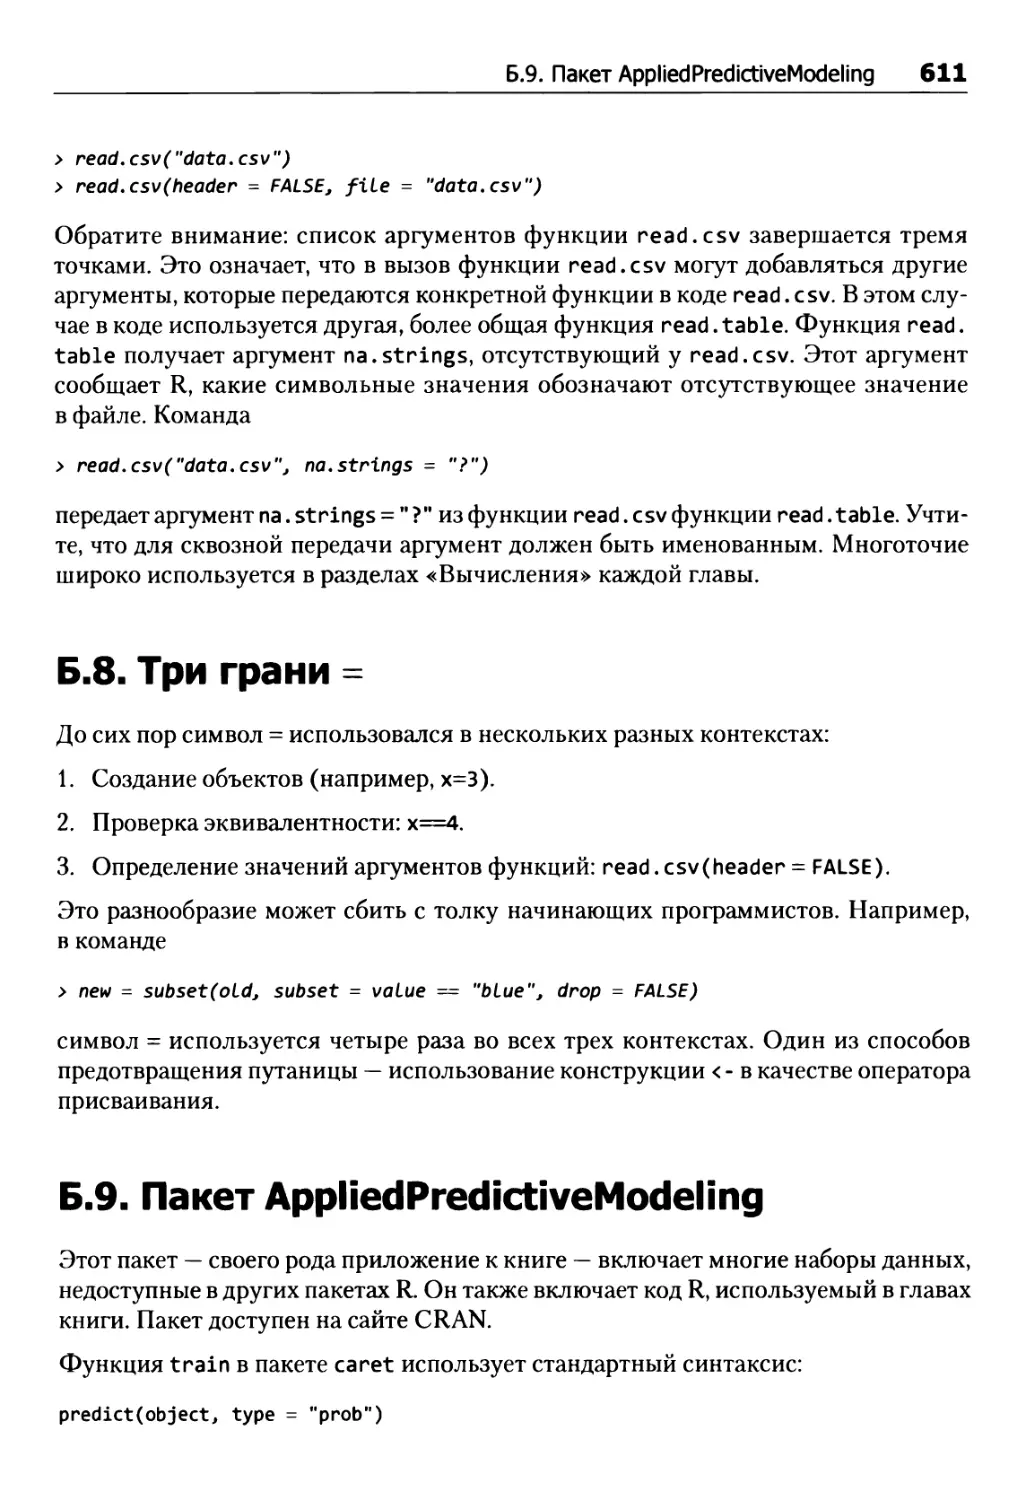 Б.8. Три грани =
Б.9. Пакет AppliedPredictiveModeling